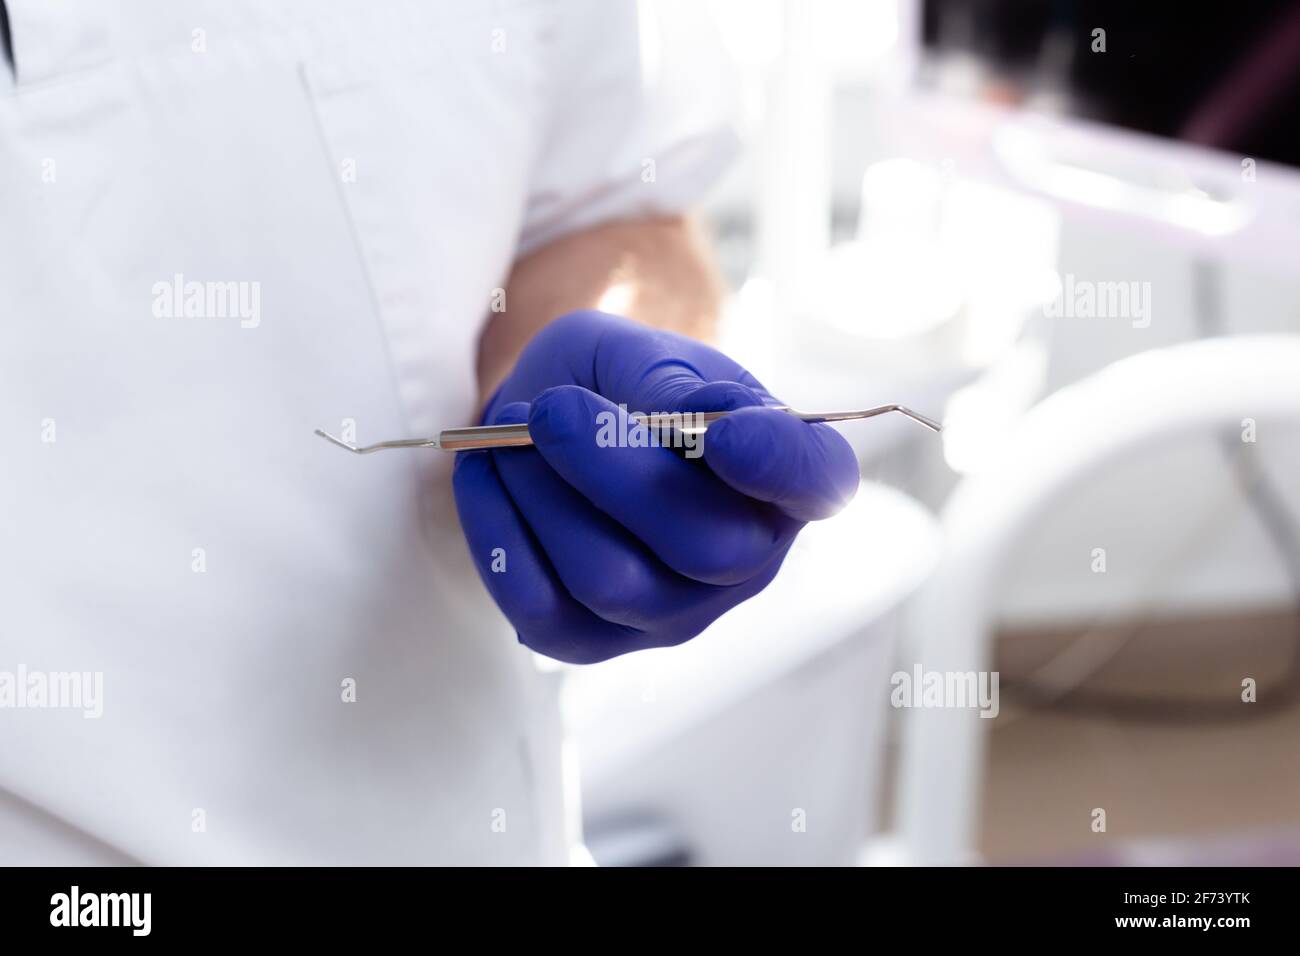 Le mani maschili in guanti medici blu tengono uno strumento dentale Foto Stock